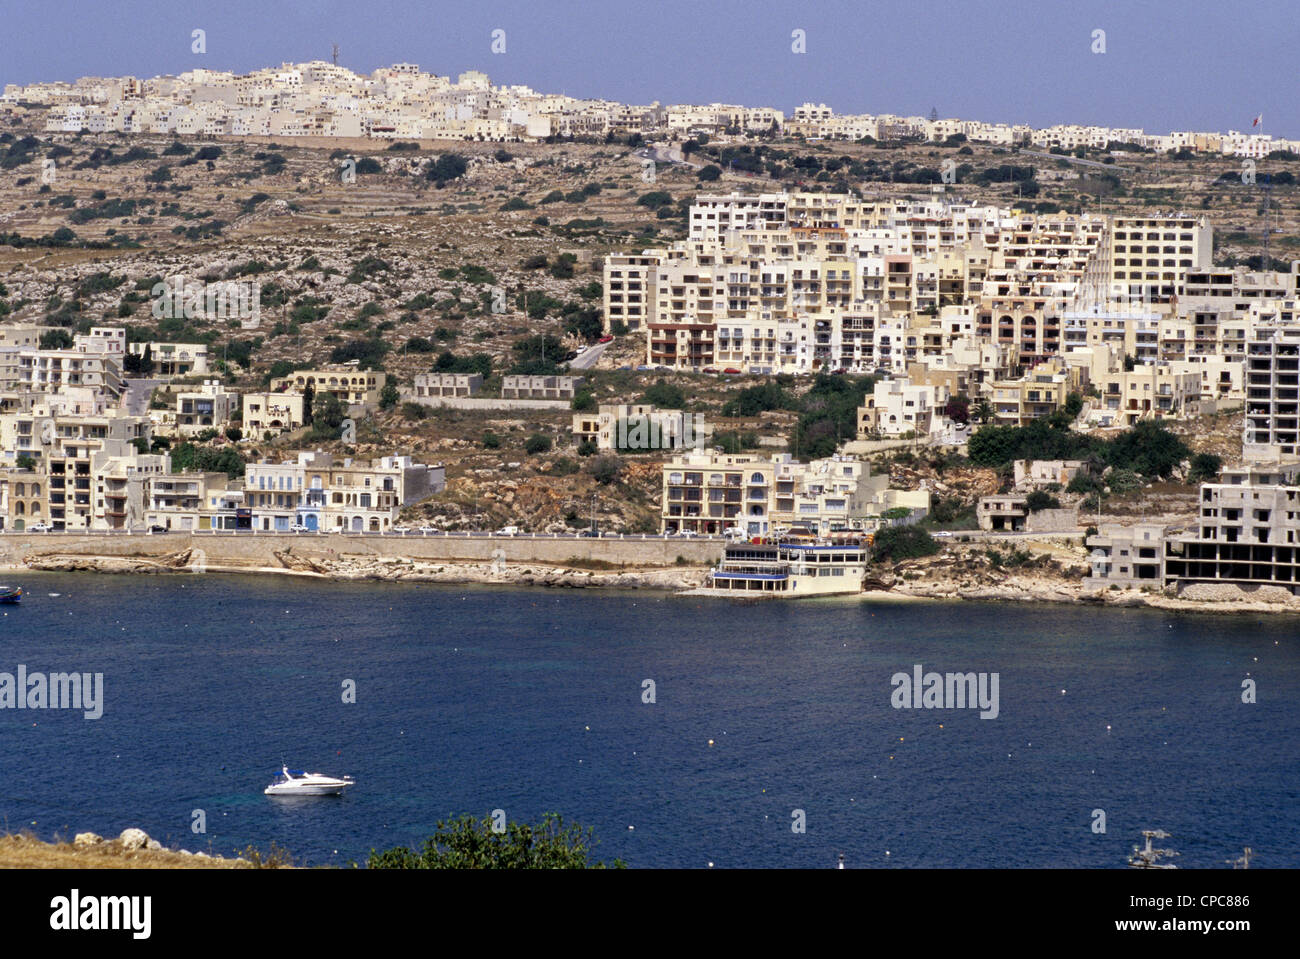 Saint Paul's, foreground, Mellieha, background, Malta. Stock Photo